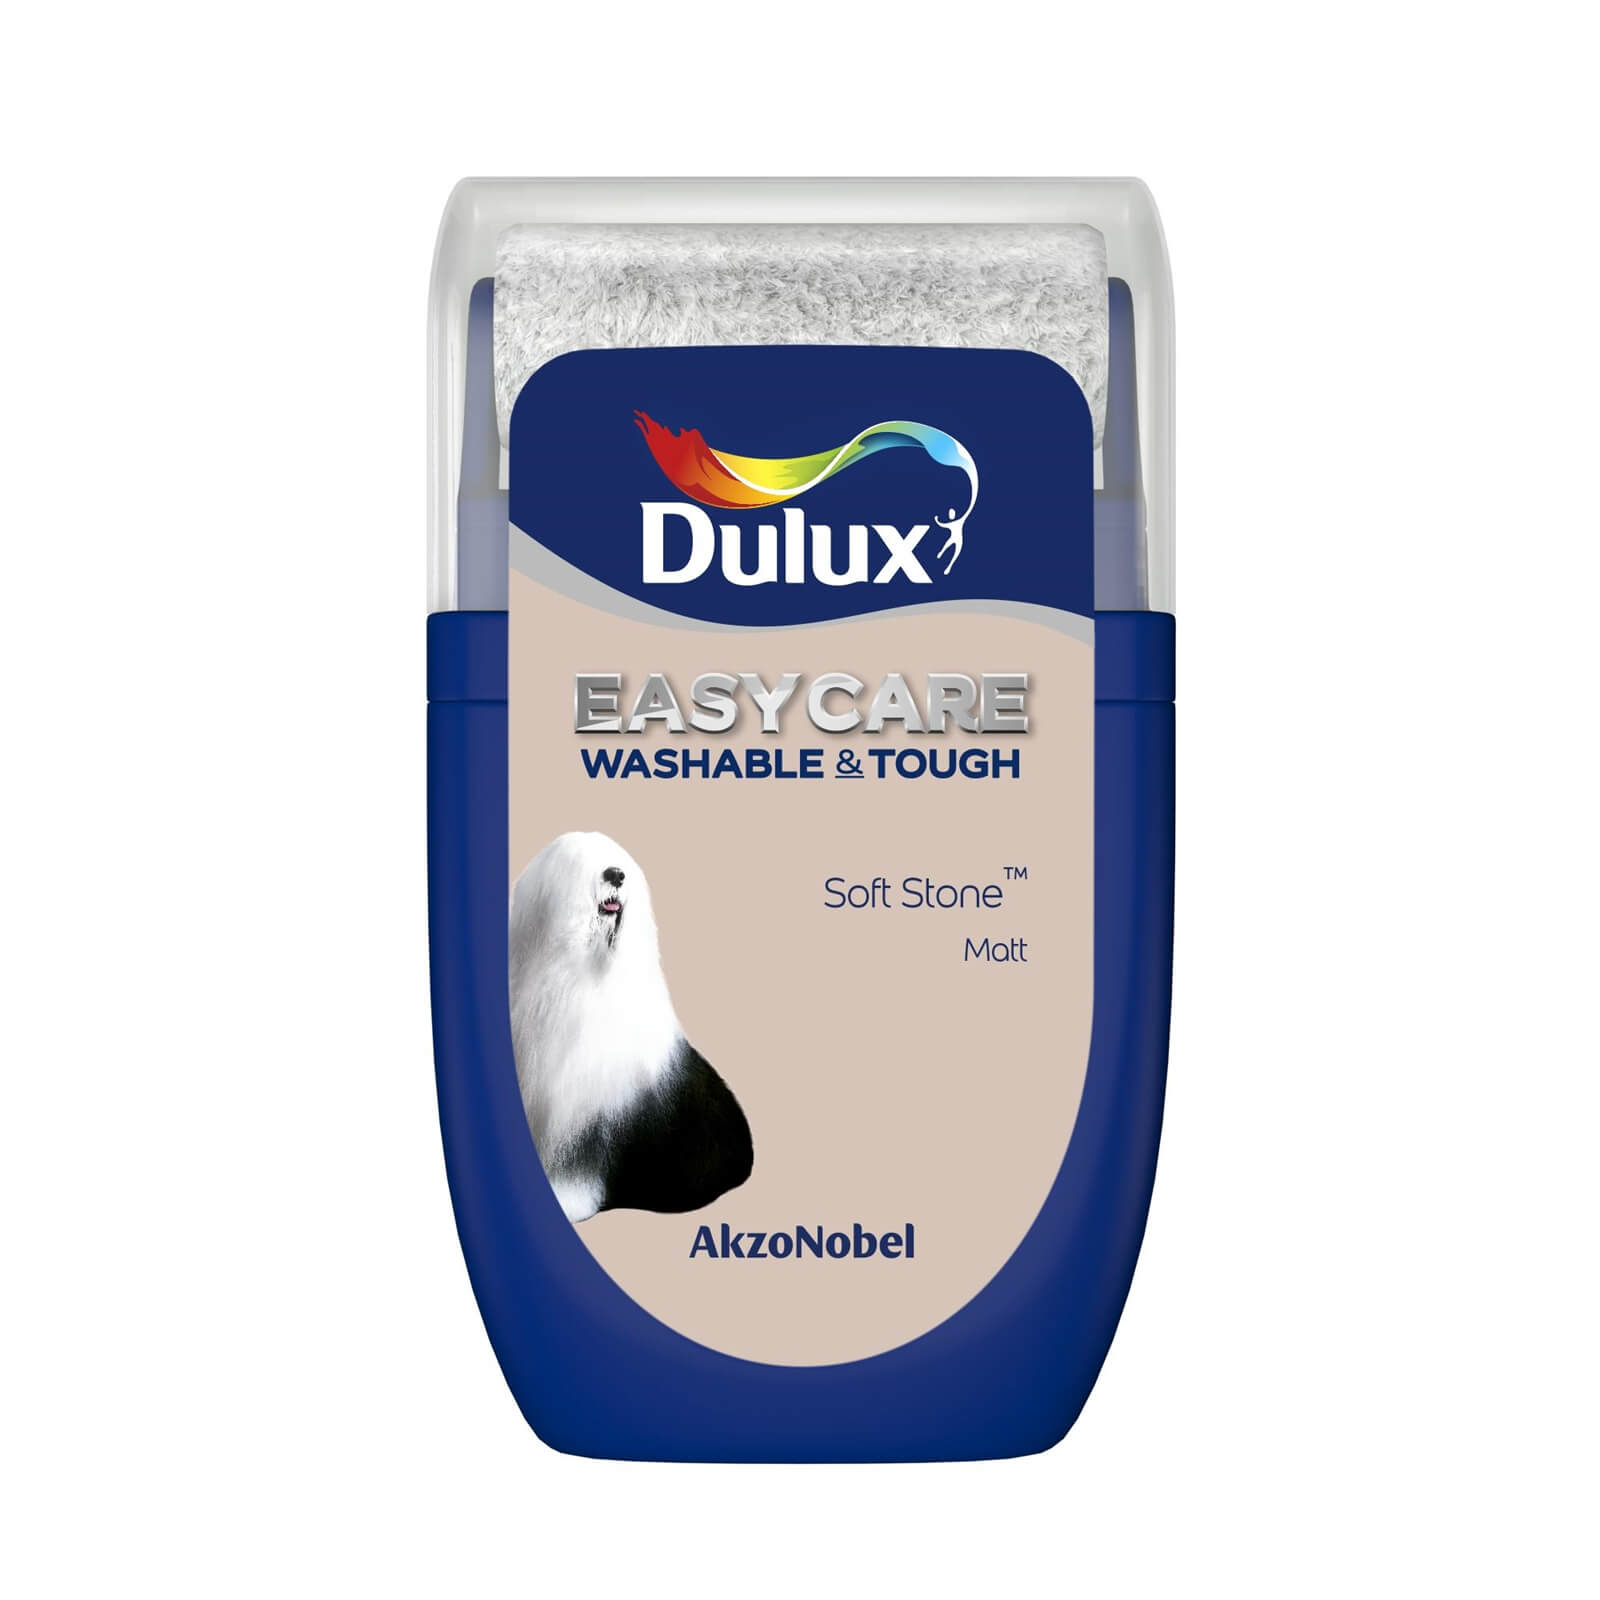 Dulux Easycare Washable & Tough Matt Paint Soft Stone - Tester 30ml